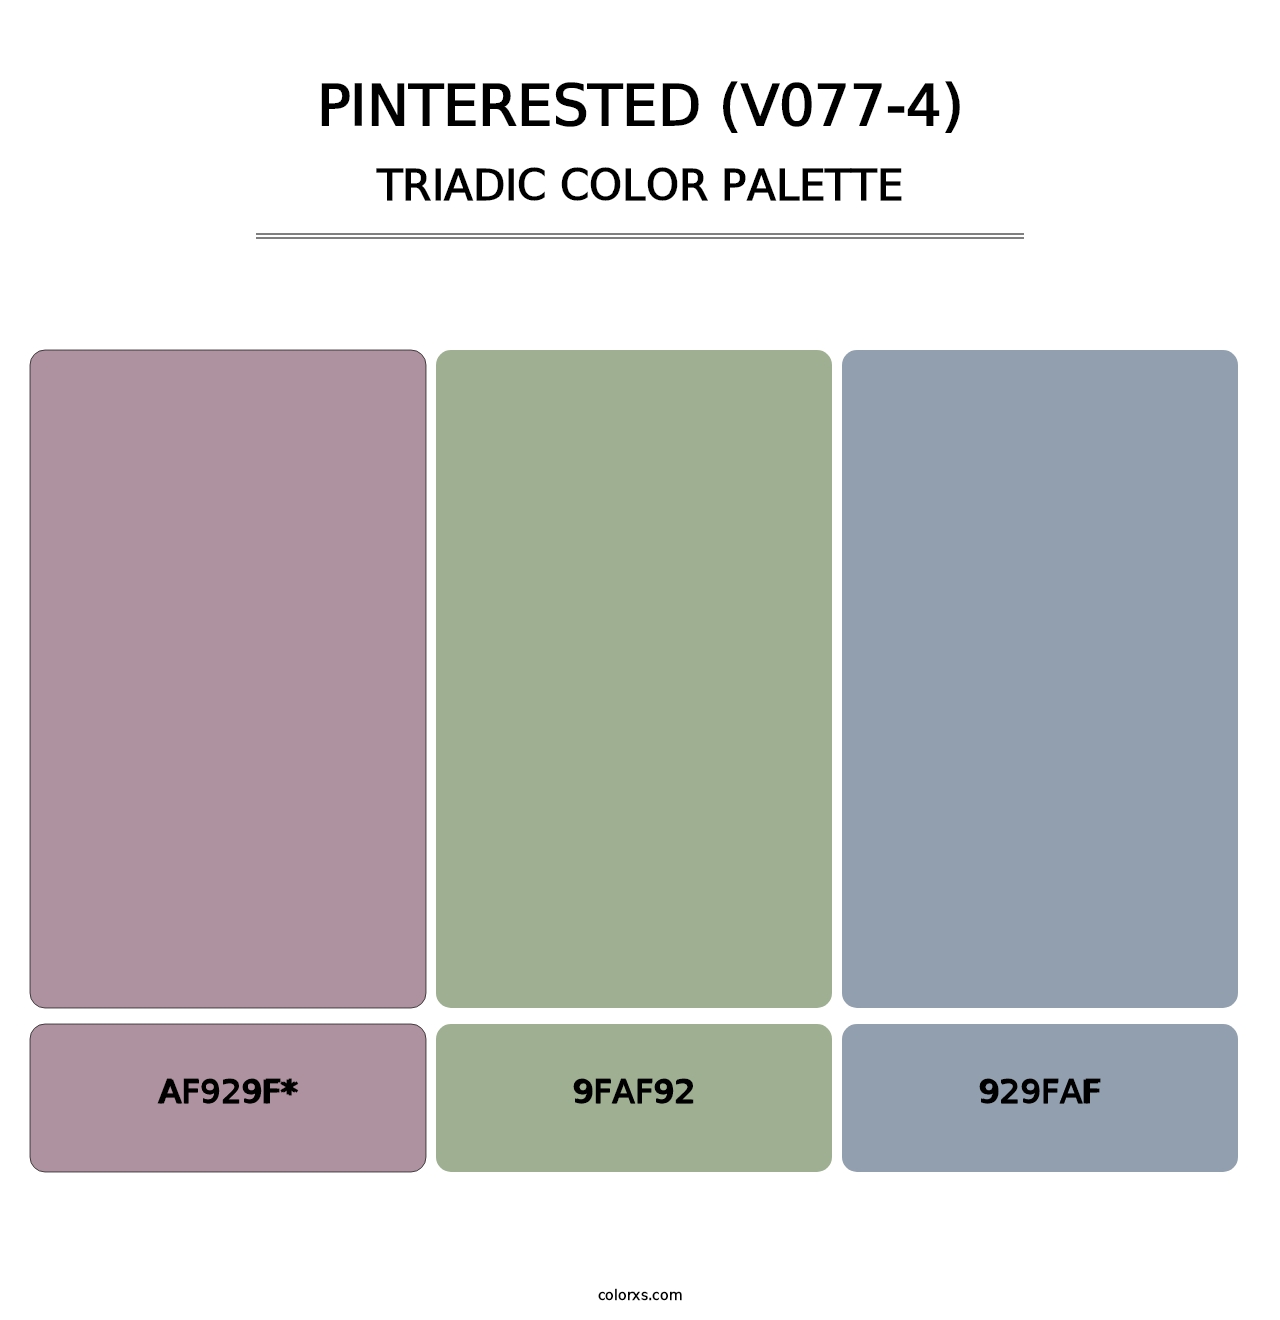 Pinterested (V077-4) - Triadic Color Palette